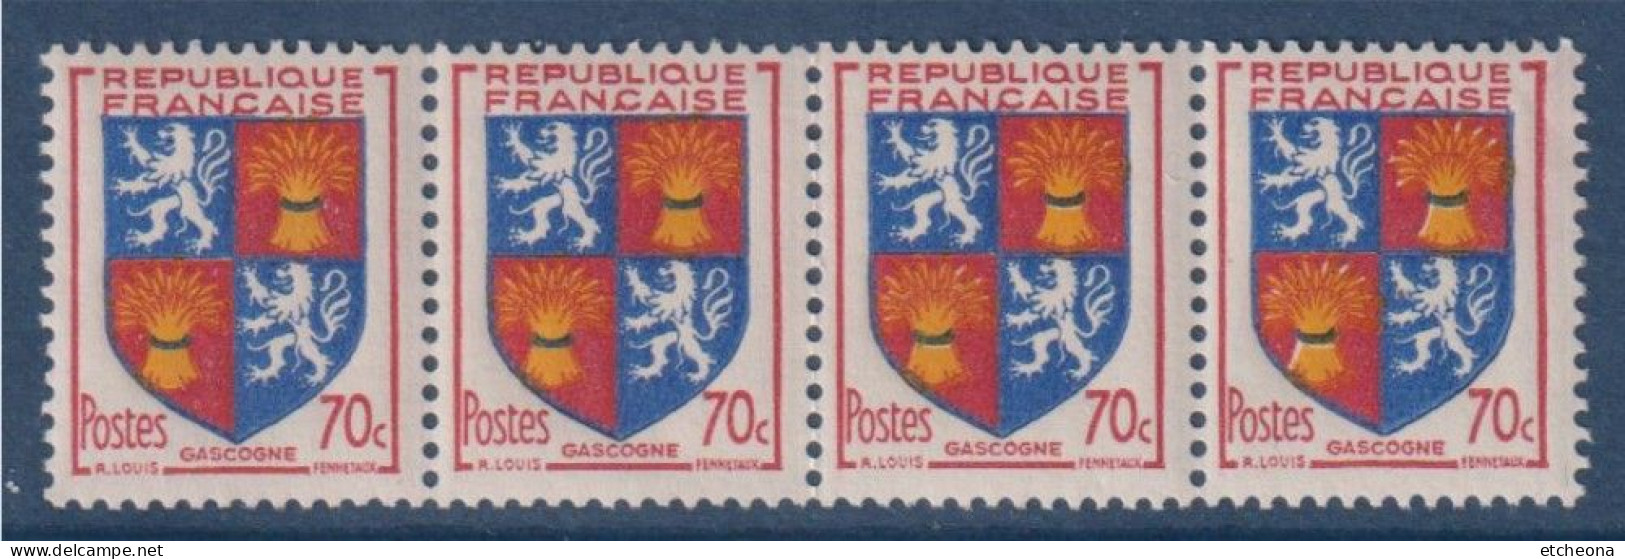 Gascogne Armoiries De Provinces VI N°958 Bande De 4 Timbres Neufs - 1941-66 Stemmi E Stendardi